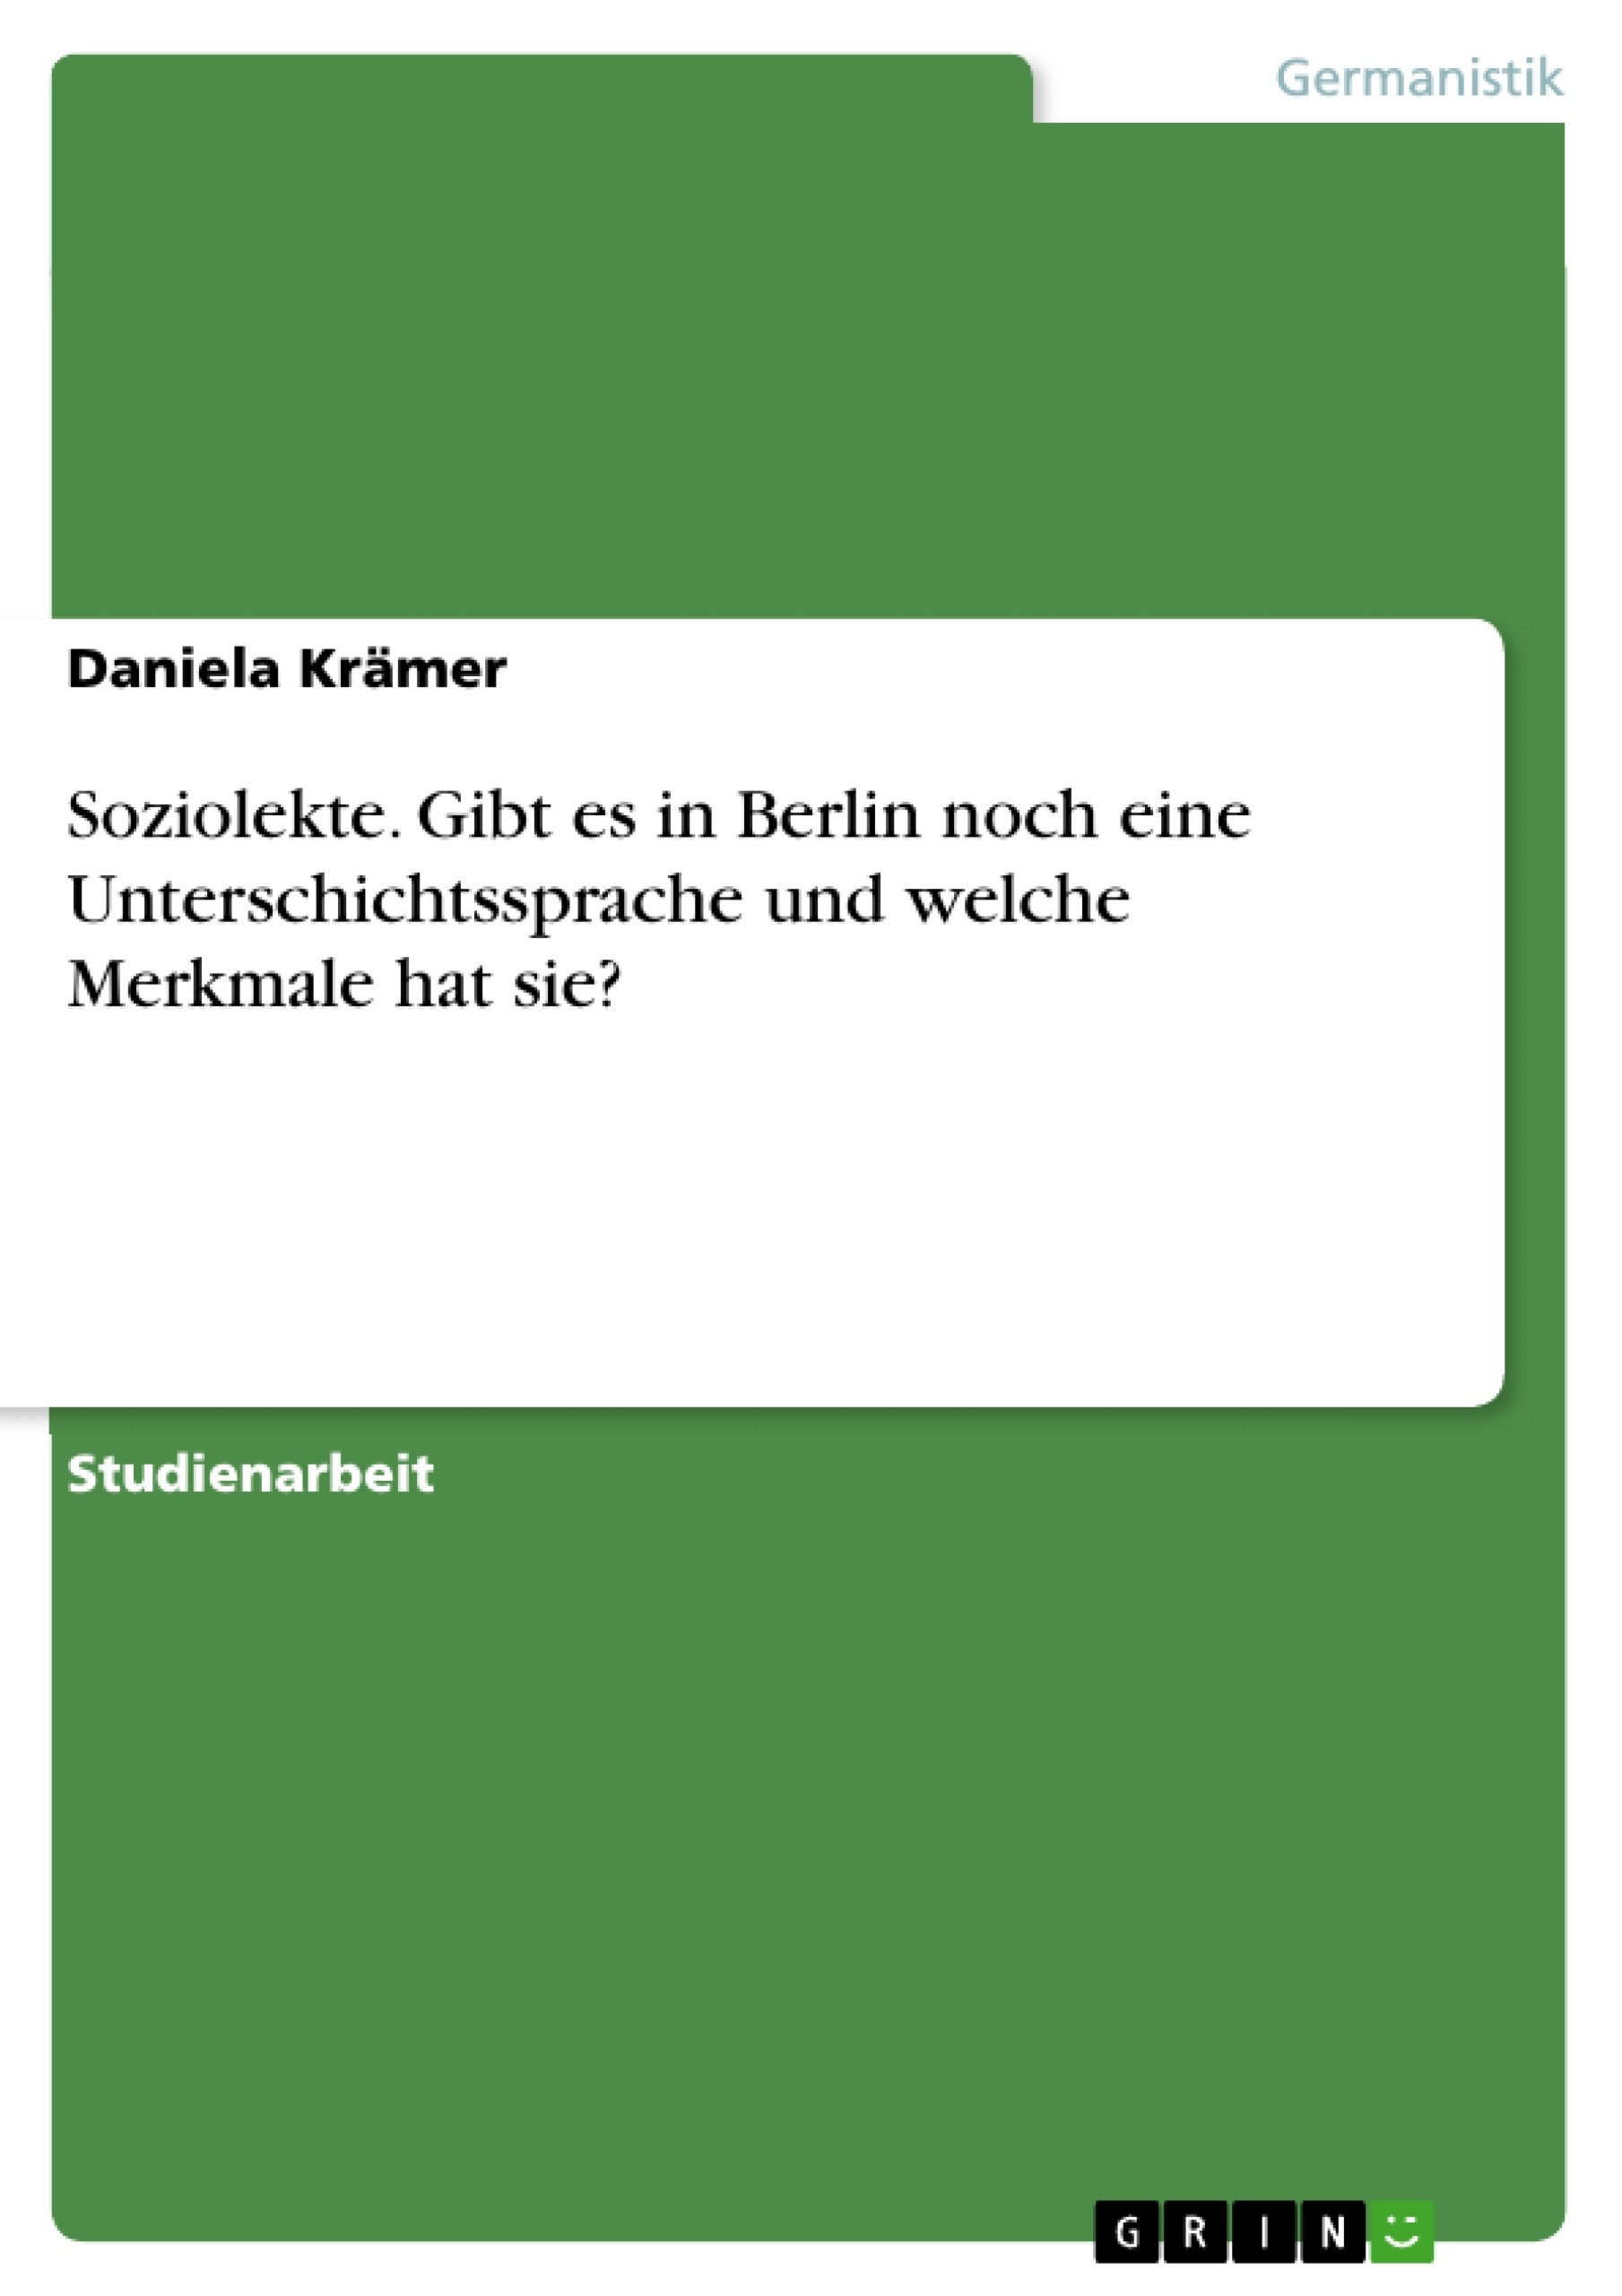 Título: Soziolekte. Gibt es in Berlin noch eine Unterschichtssprache und welche Merkmale hat sie?